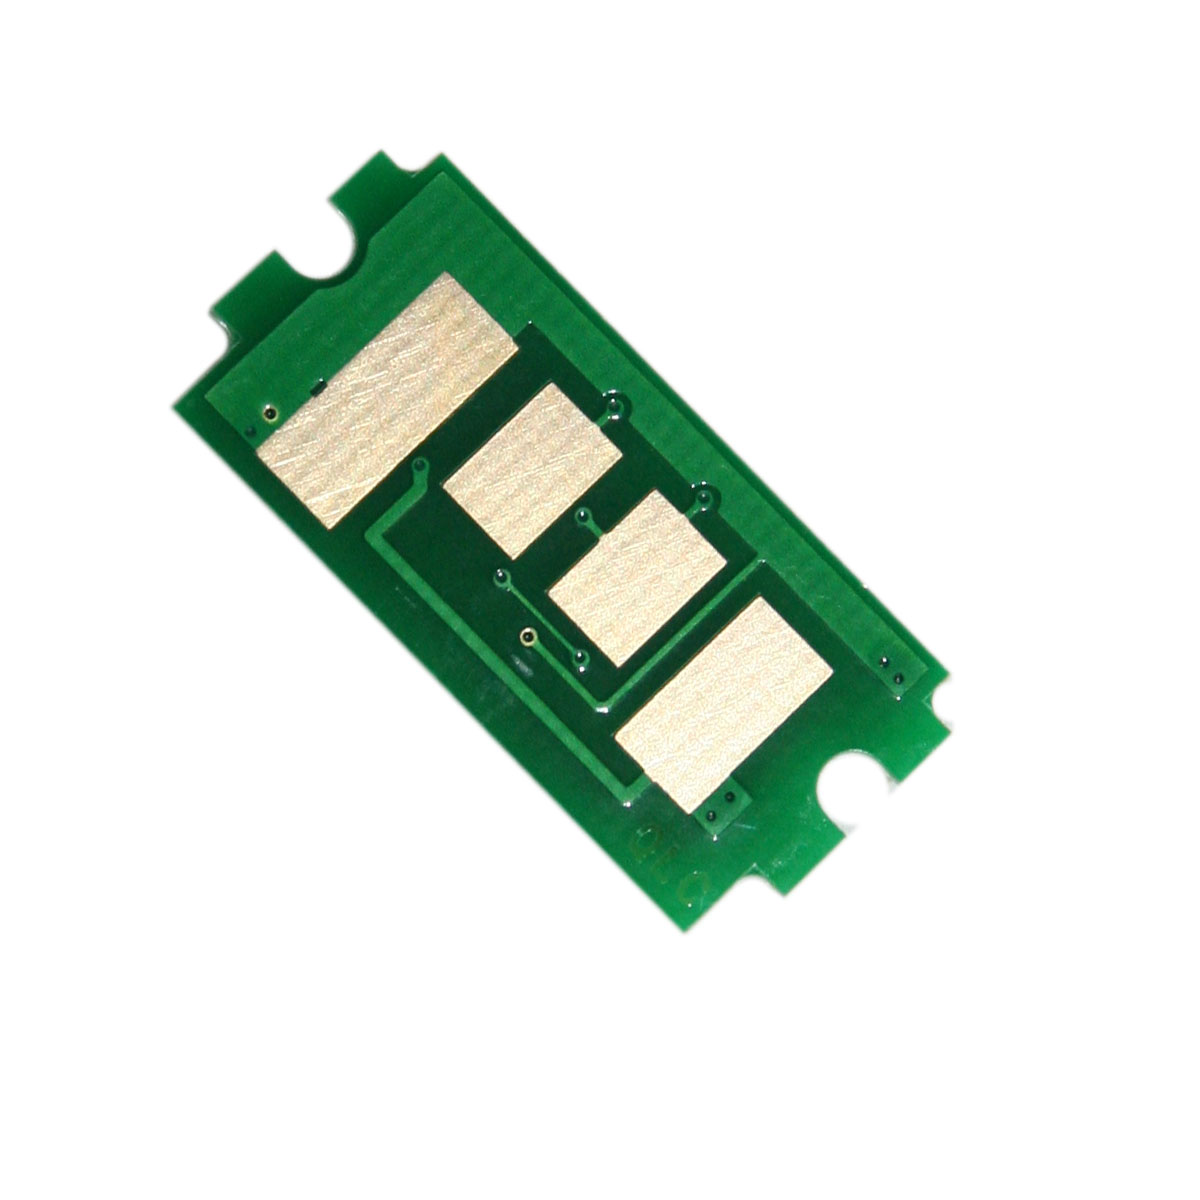 Chip zliczający Kyocera-Mita FS 4200